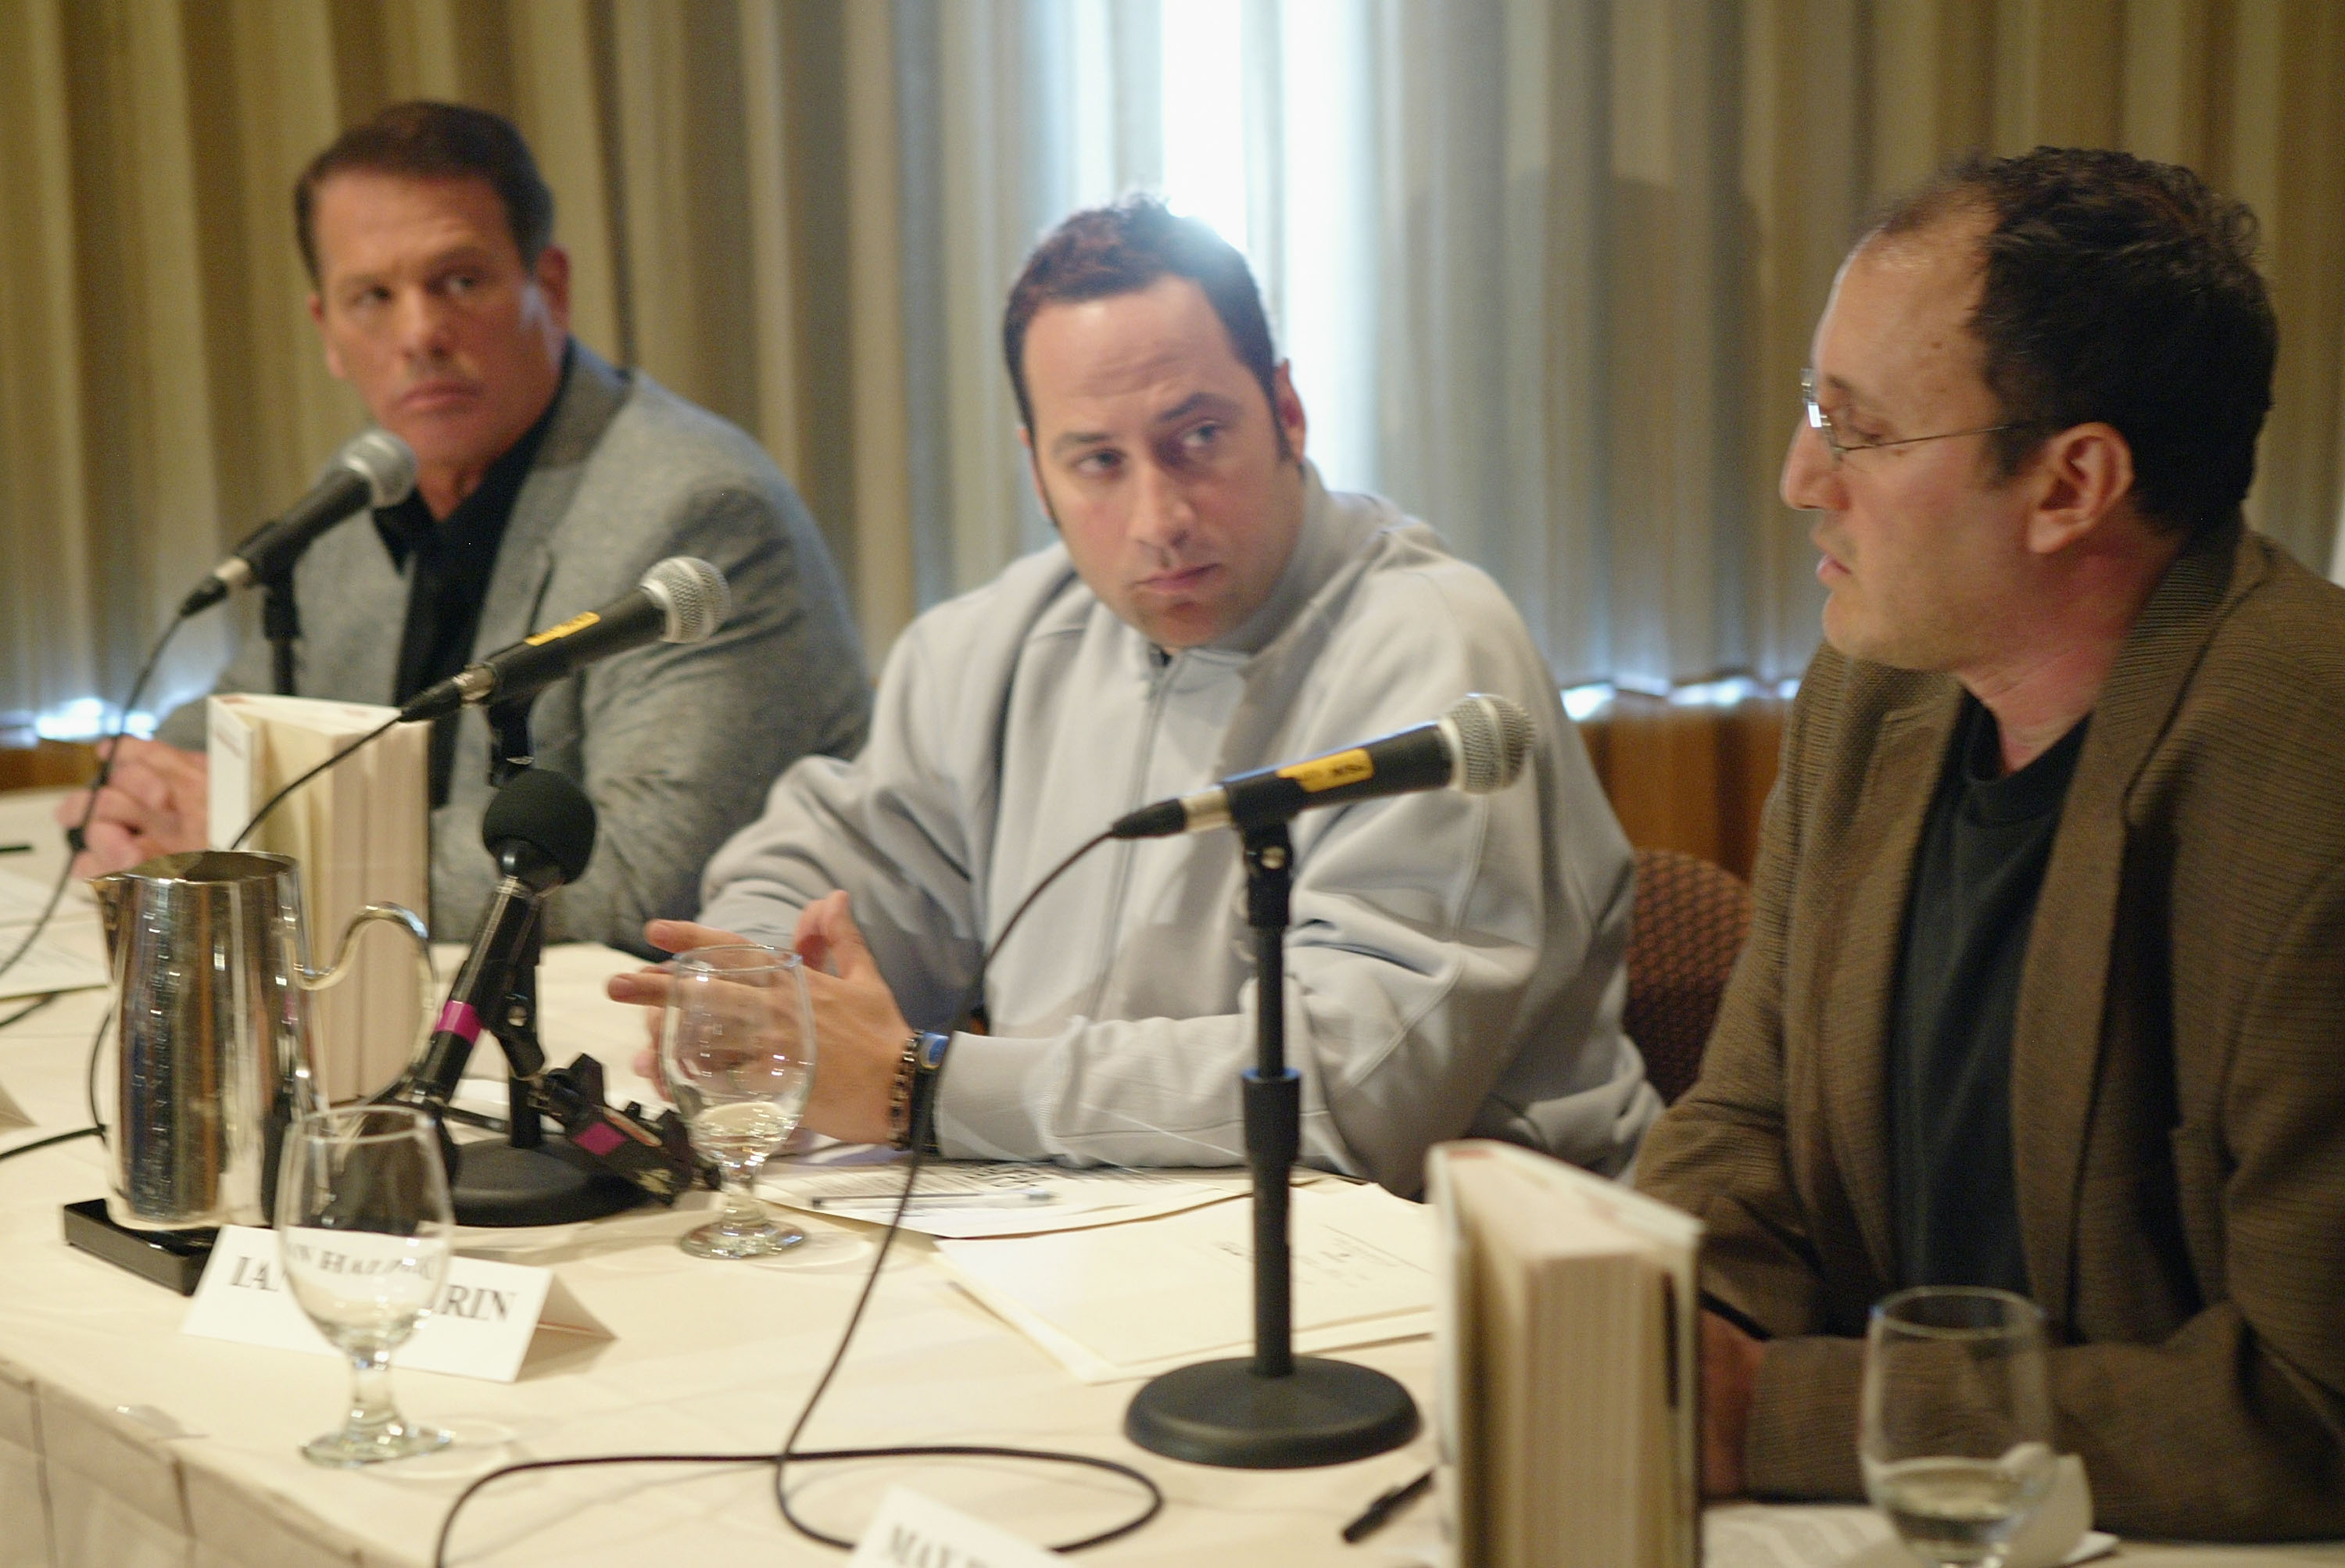 Privatdetektiv Tom Grant (links) mit den Autoren Ian Halperin (Mitte) und Max Wallace (rechts) bei einer Pressekonferenz im April 2004